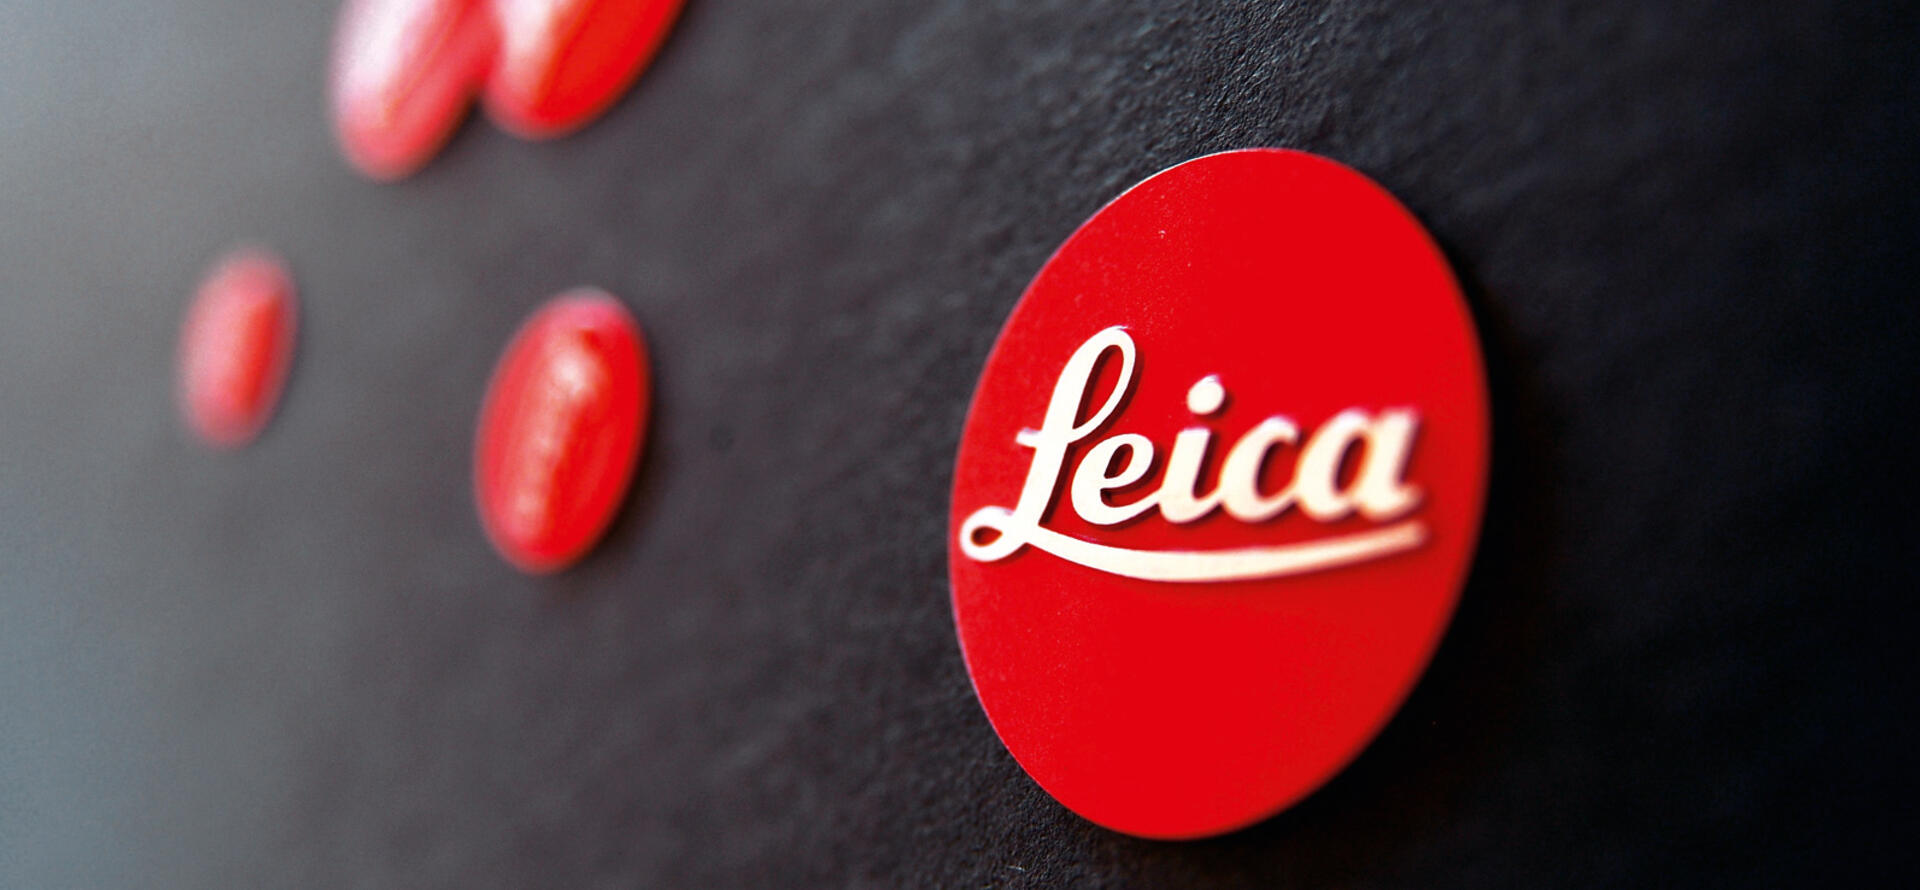 Leica Logos new